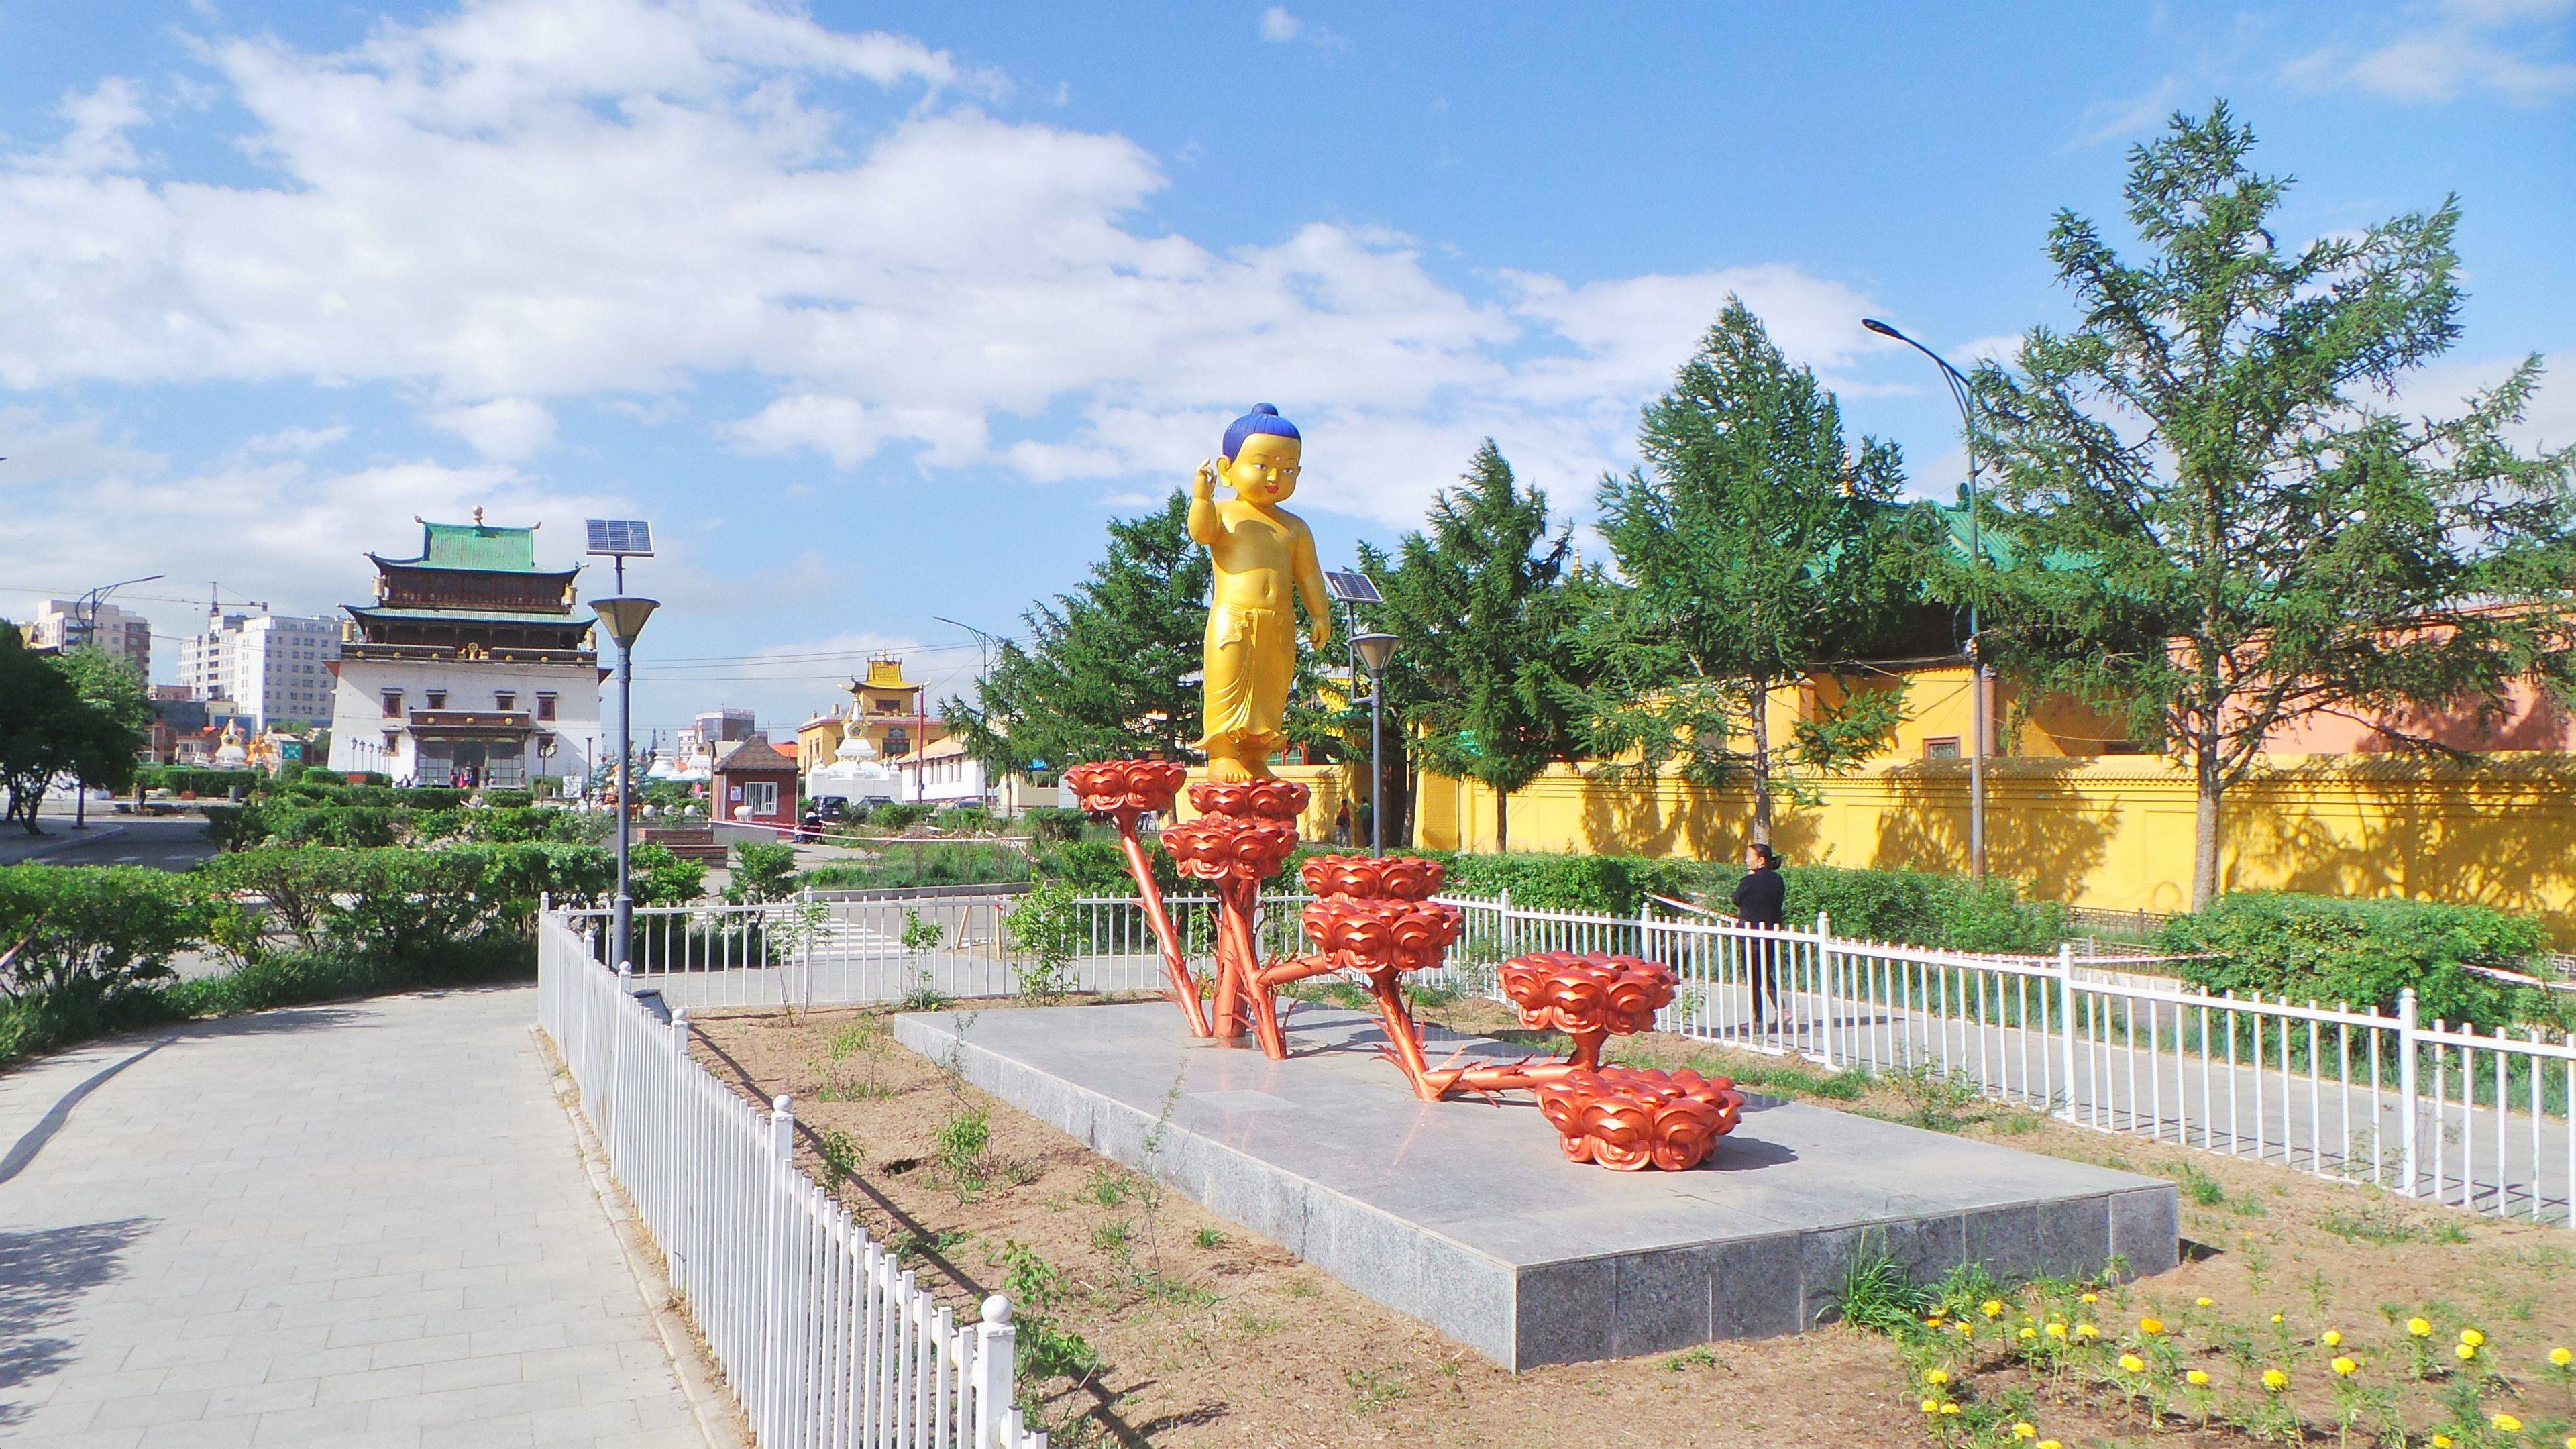 Bienvenue à Oulan - Bator, capitale de la Mongolie